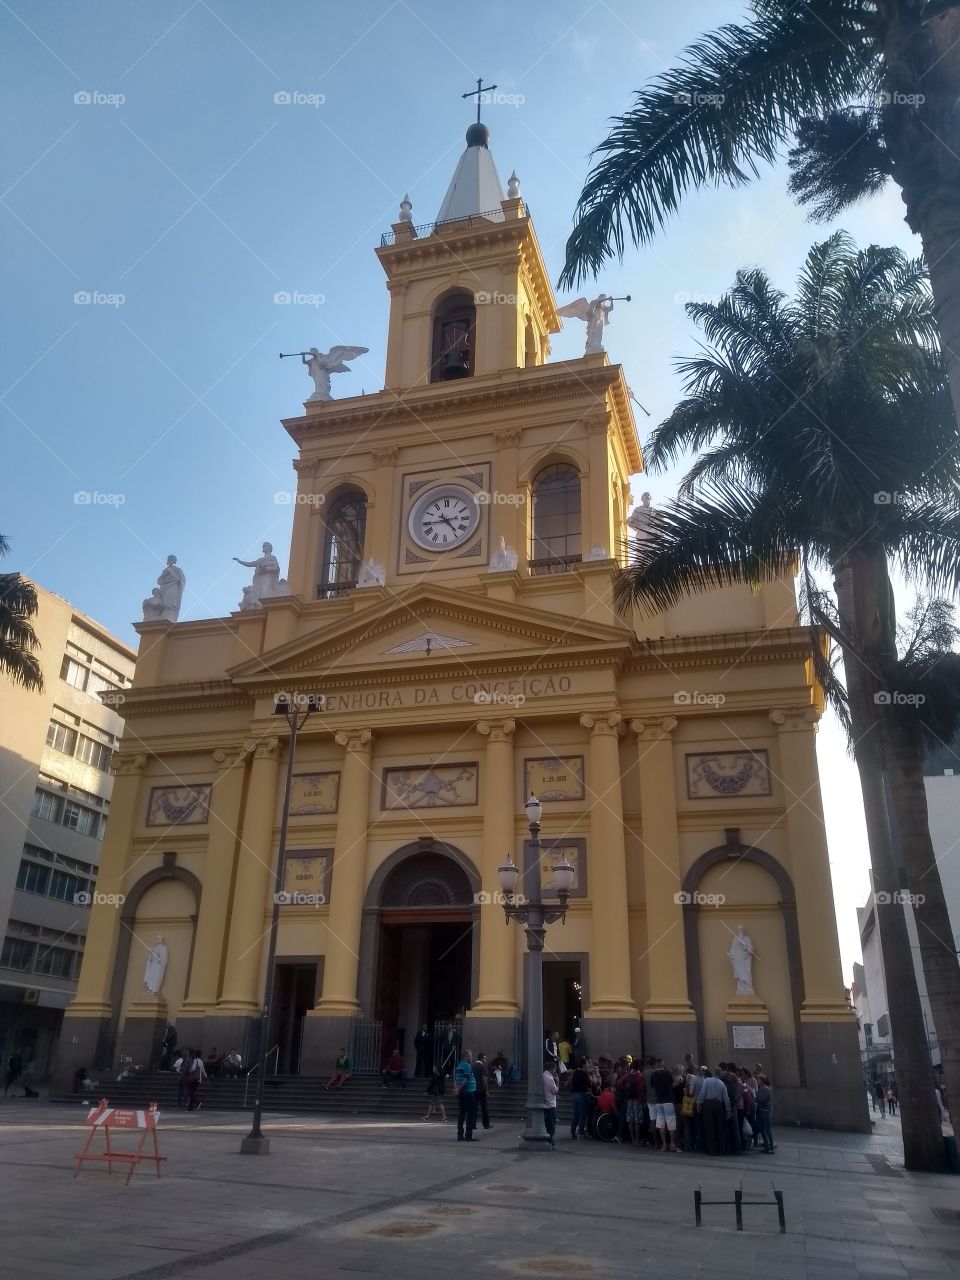 Igreja Nossa senhora da Conceição